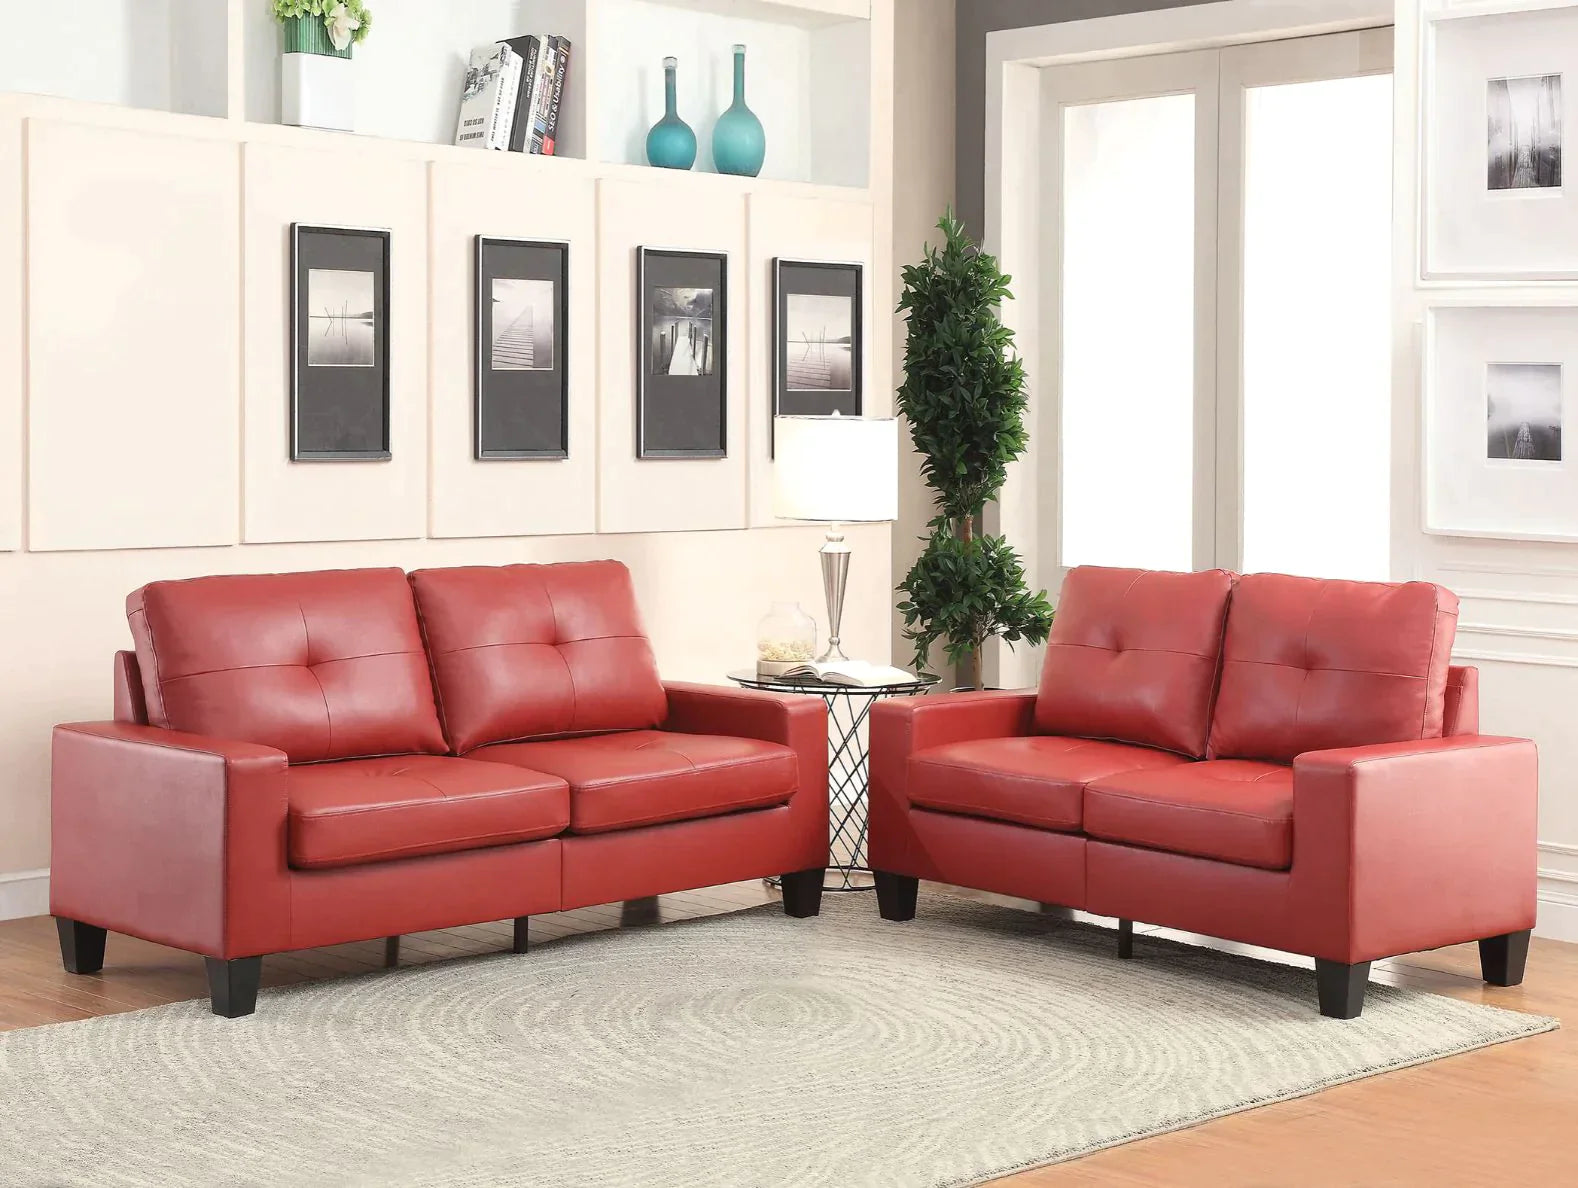 Platinum II Red PU Sofa Model 52745 By ACME Furniture